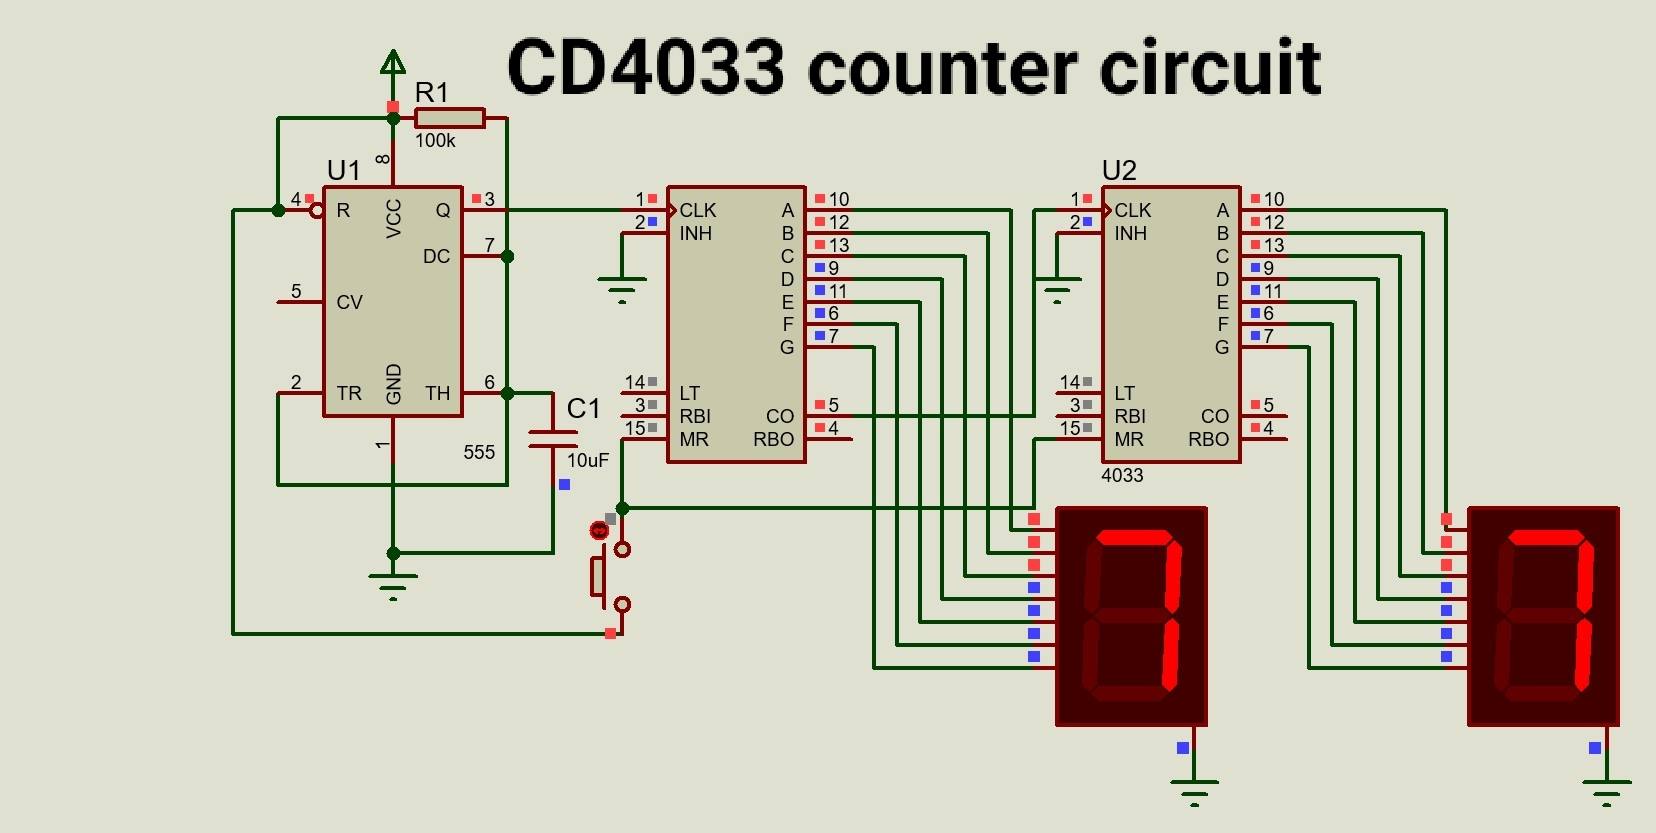 CD4033 counter circuit